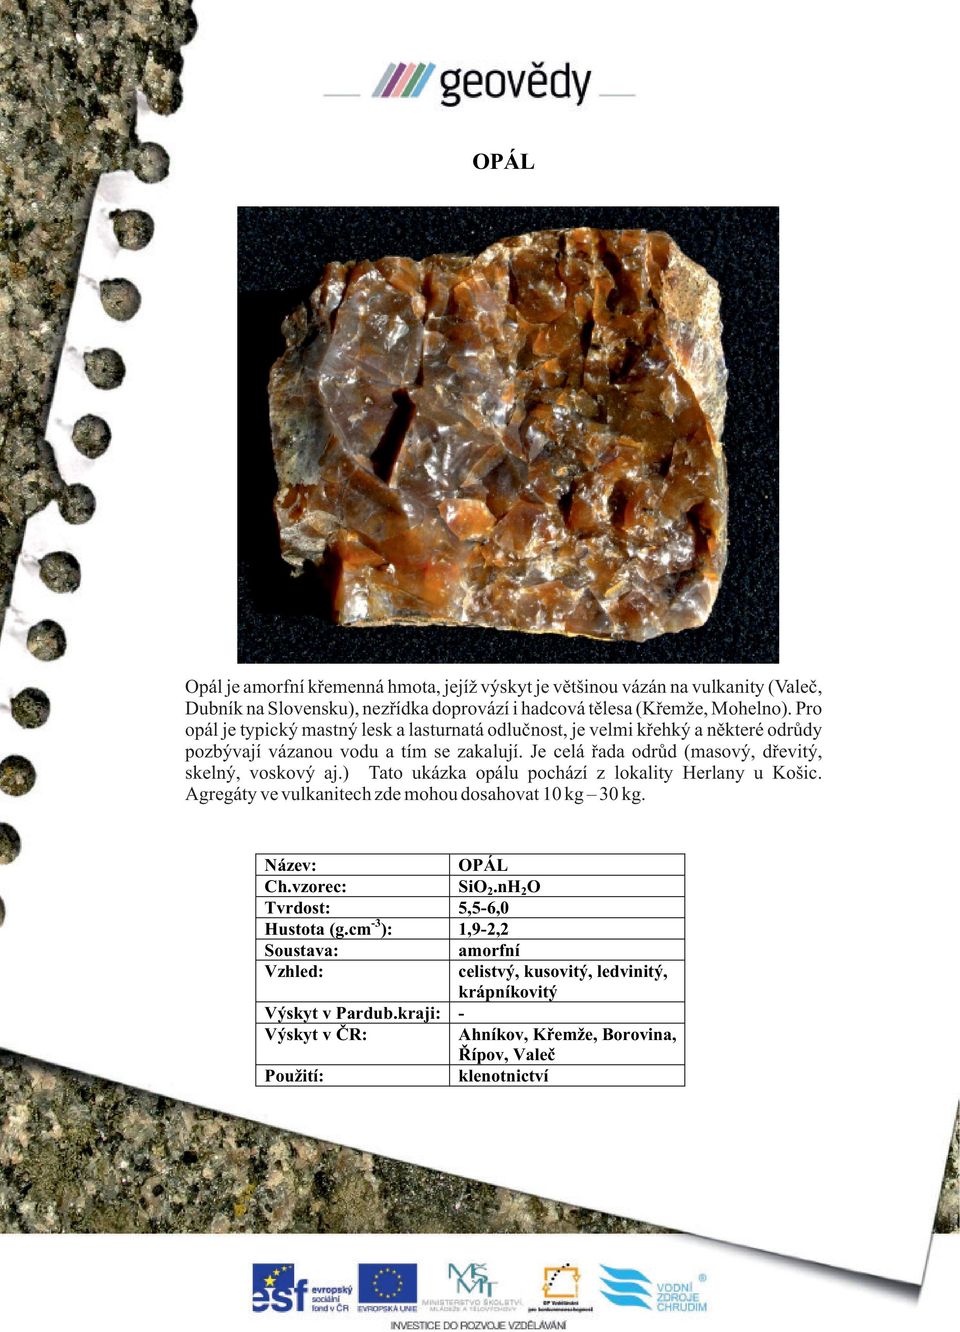 Je celá řada odrůd (masový, dřevitý, skelný, voskový aj.) Tato ukázka opálu pochází z lokality Herlany u Košic. Agregáty ve vulkanitech zde mohou dosahovat 10 kg 30 kg.